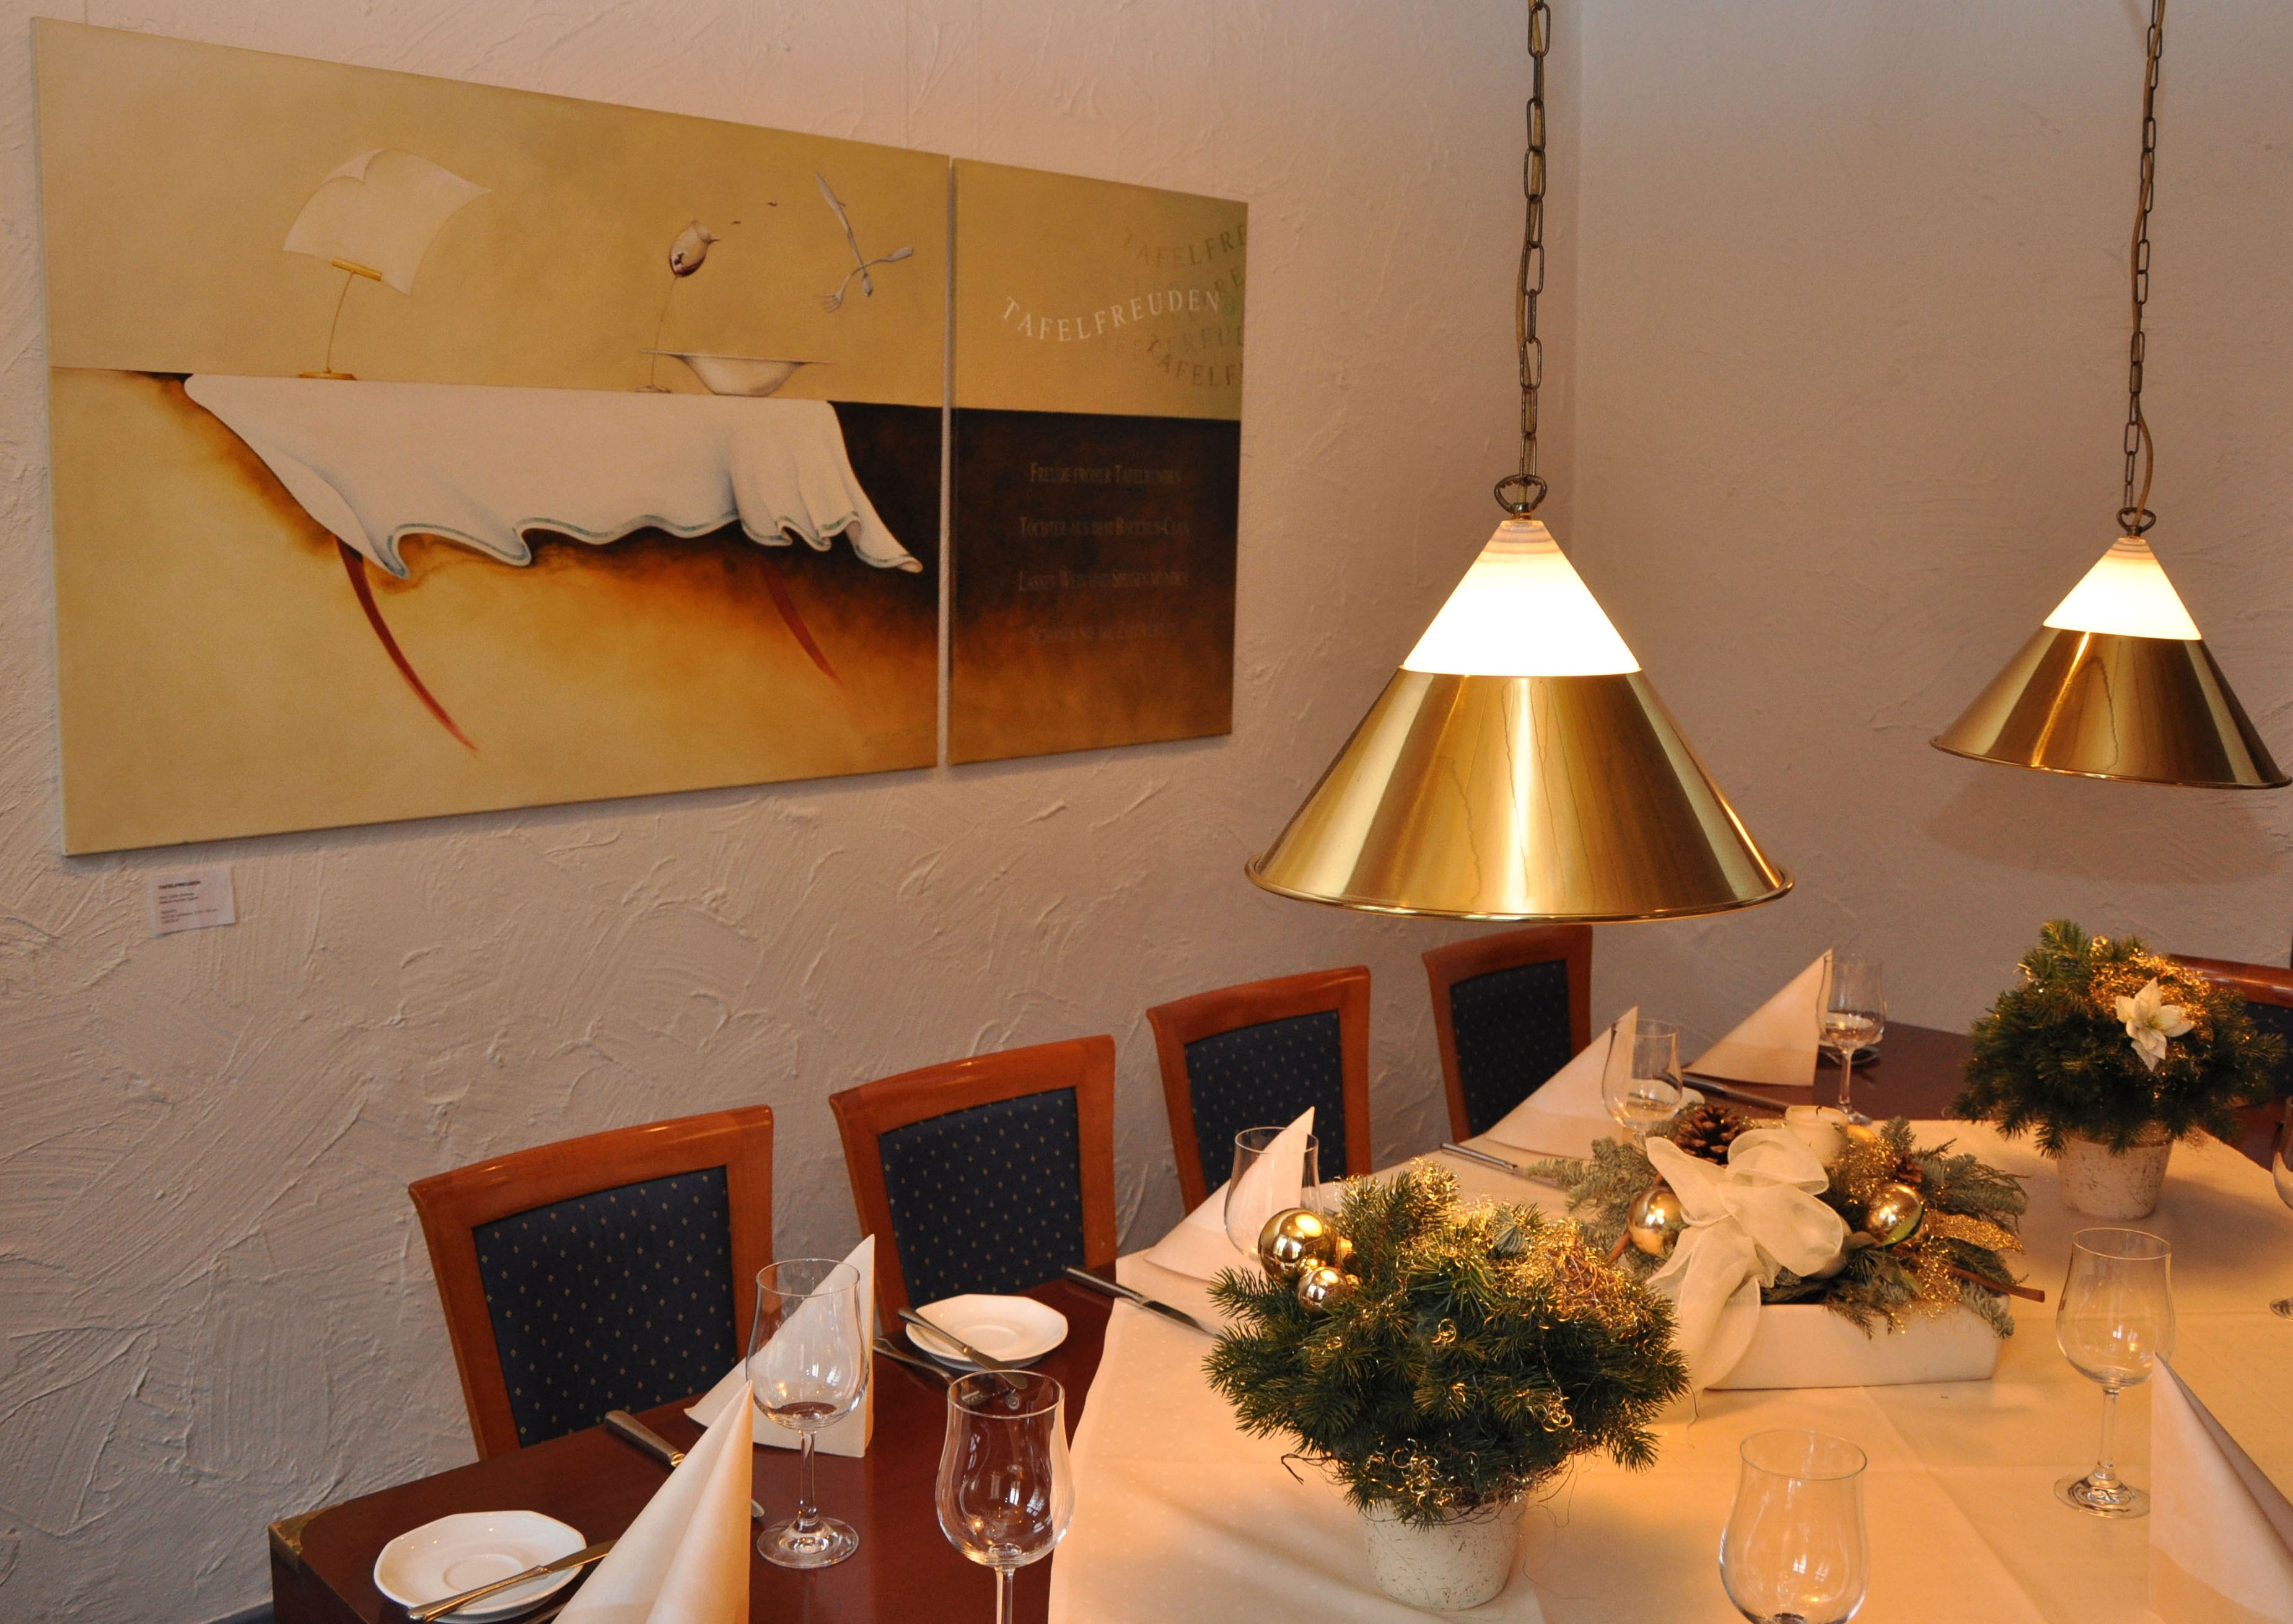 Weihnachtlich gedeckte Tafel in Gaststätte. An der Wand ein Diptychon zum Thema „Tafelfreuden“